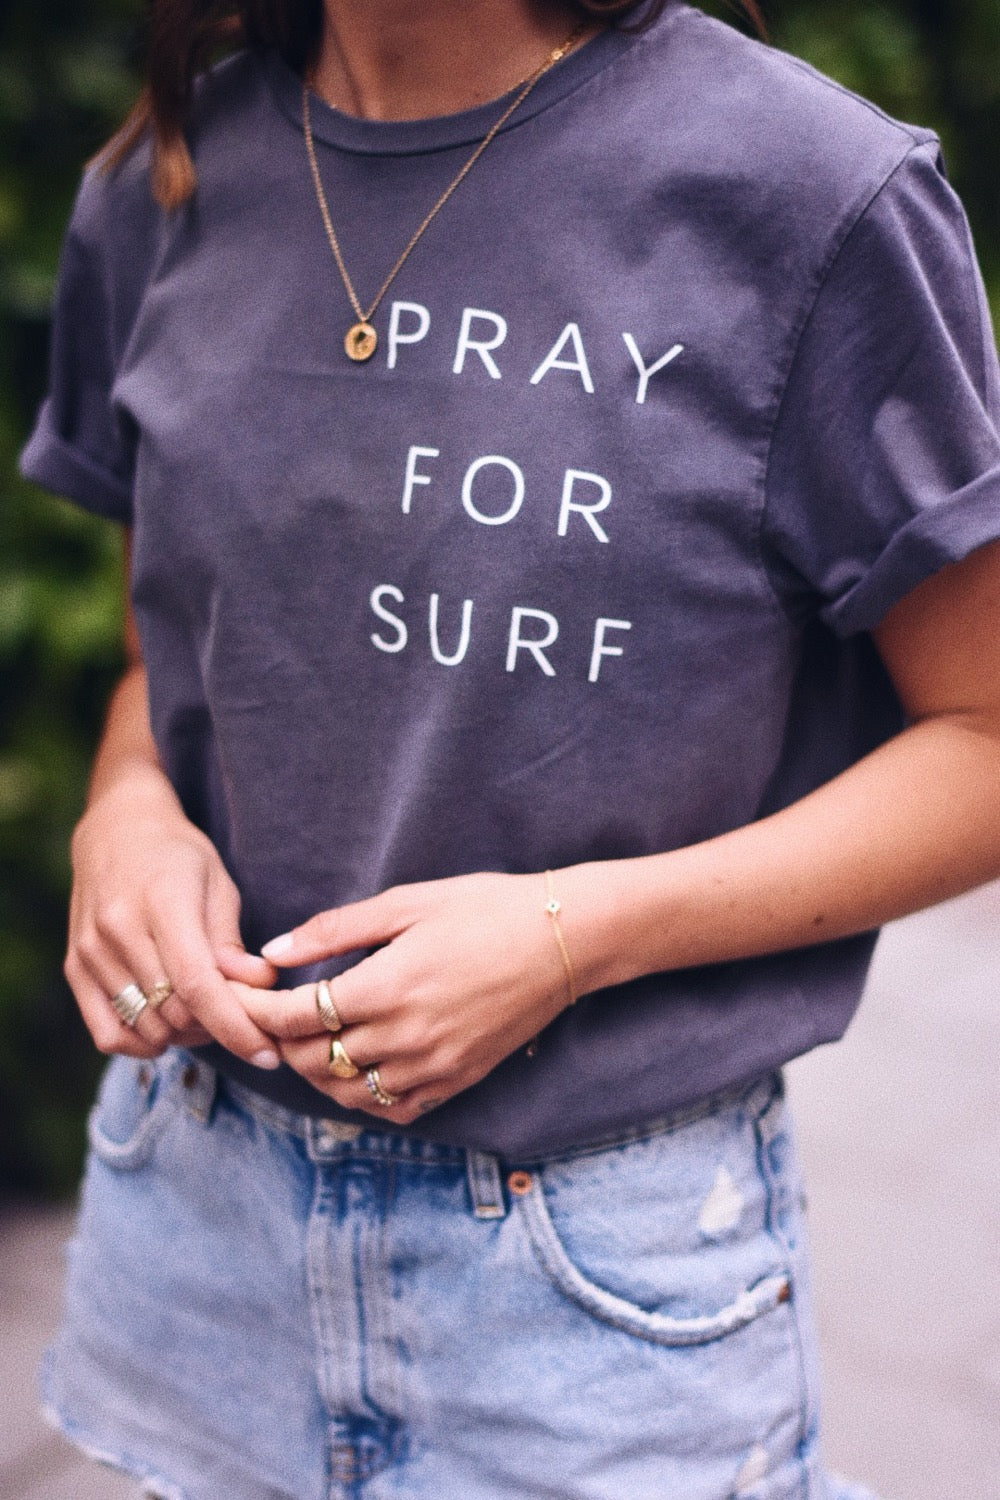 Pray for surf